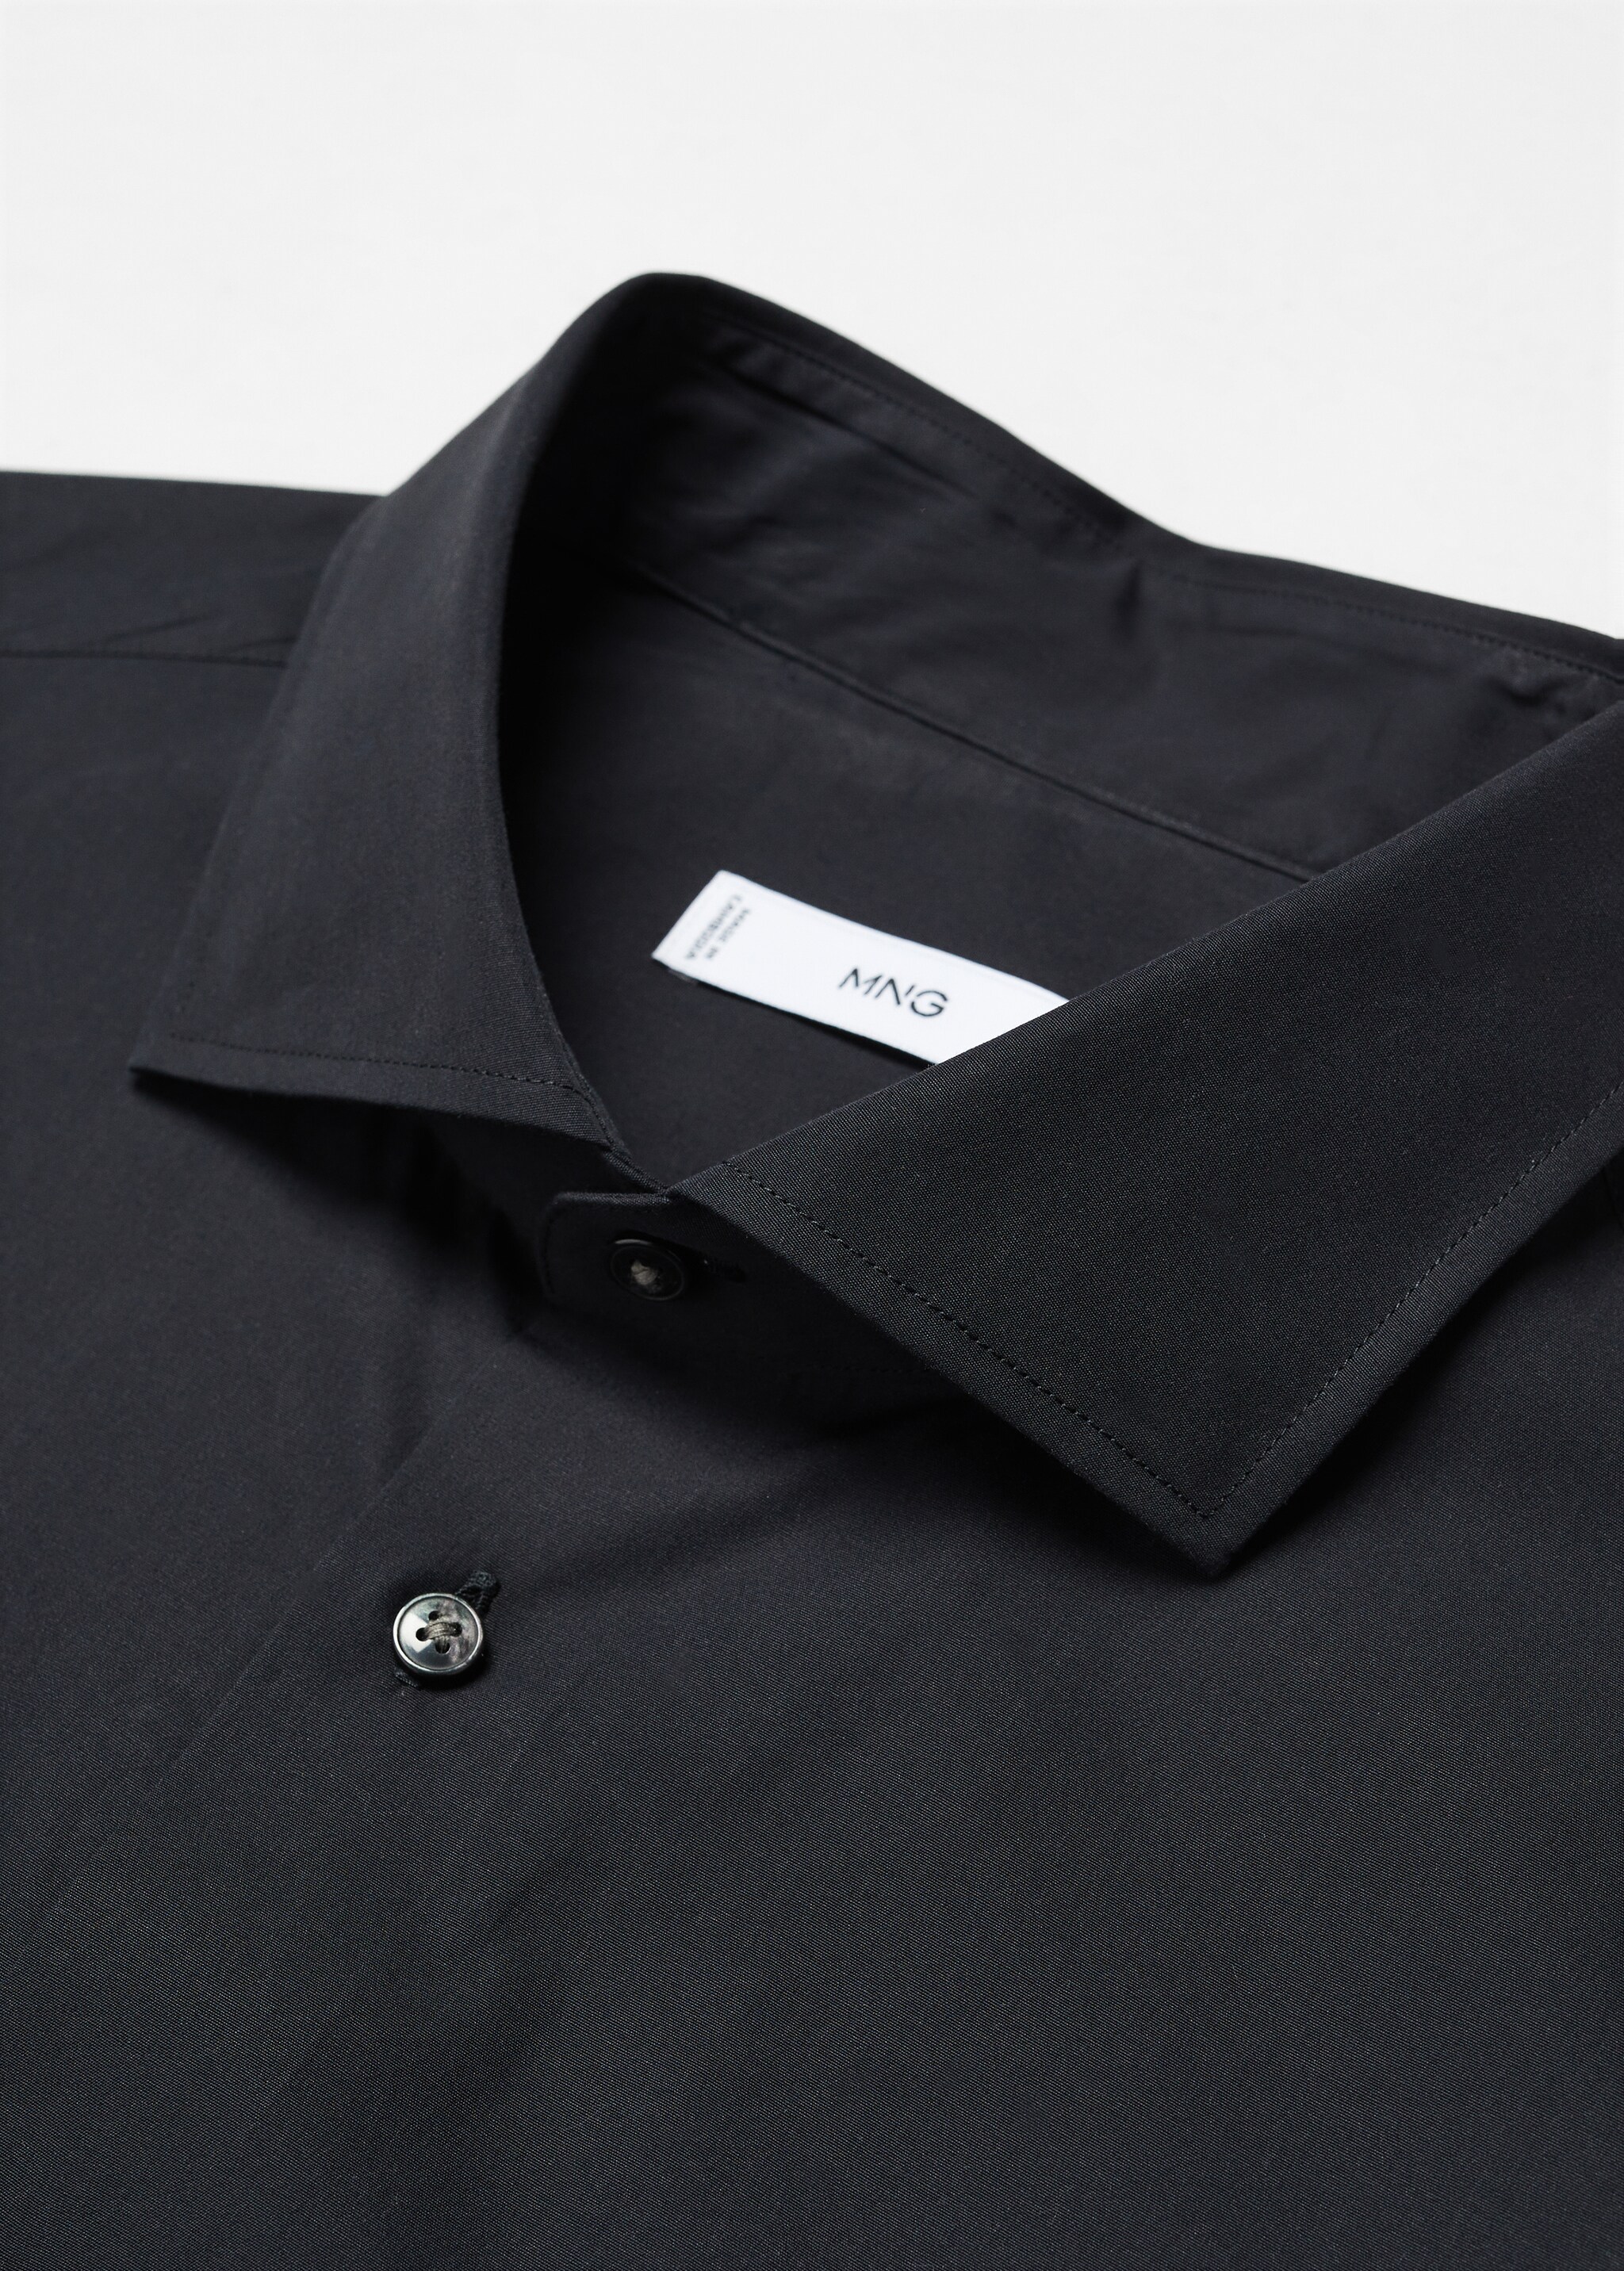 Camisa slim fit 100% algodón - Details of the article 8